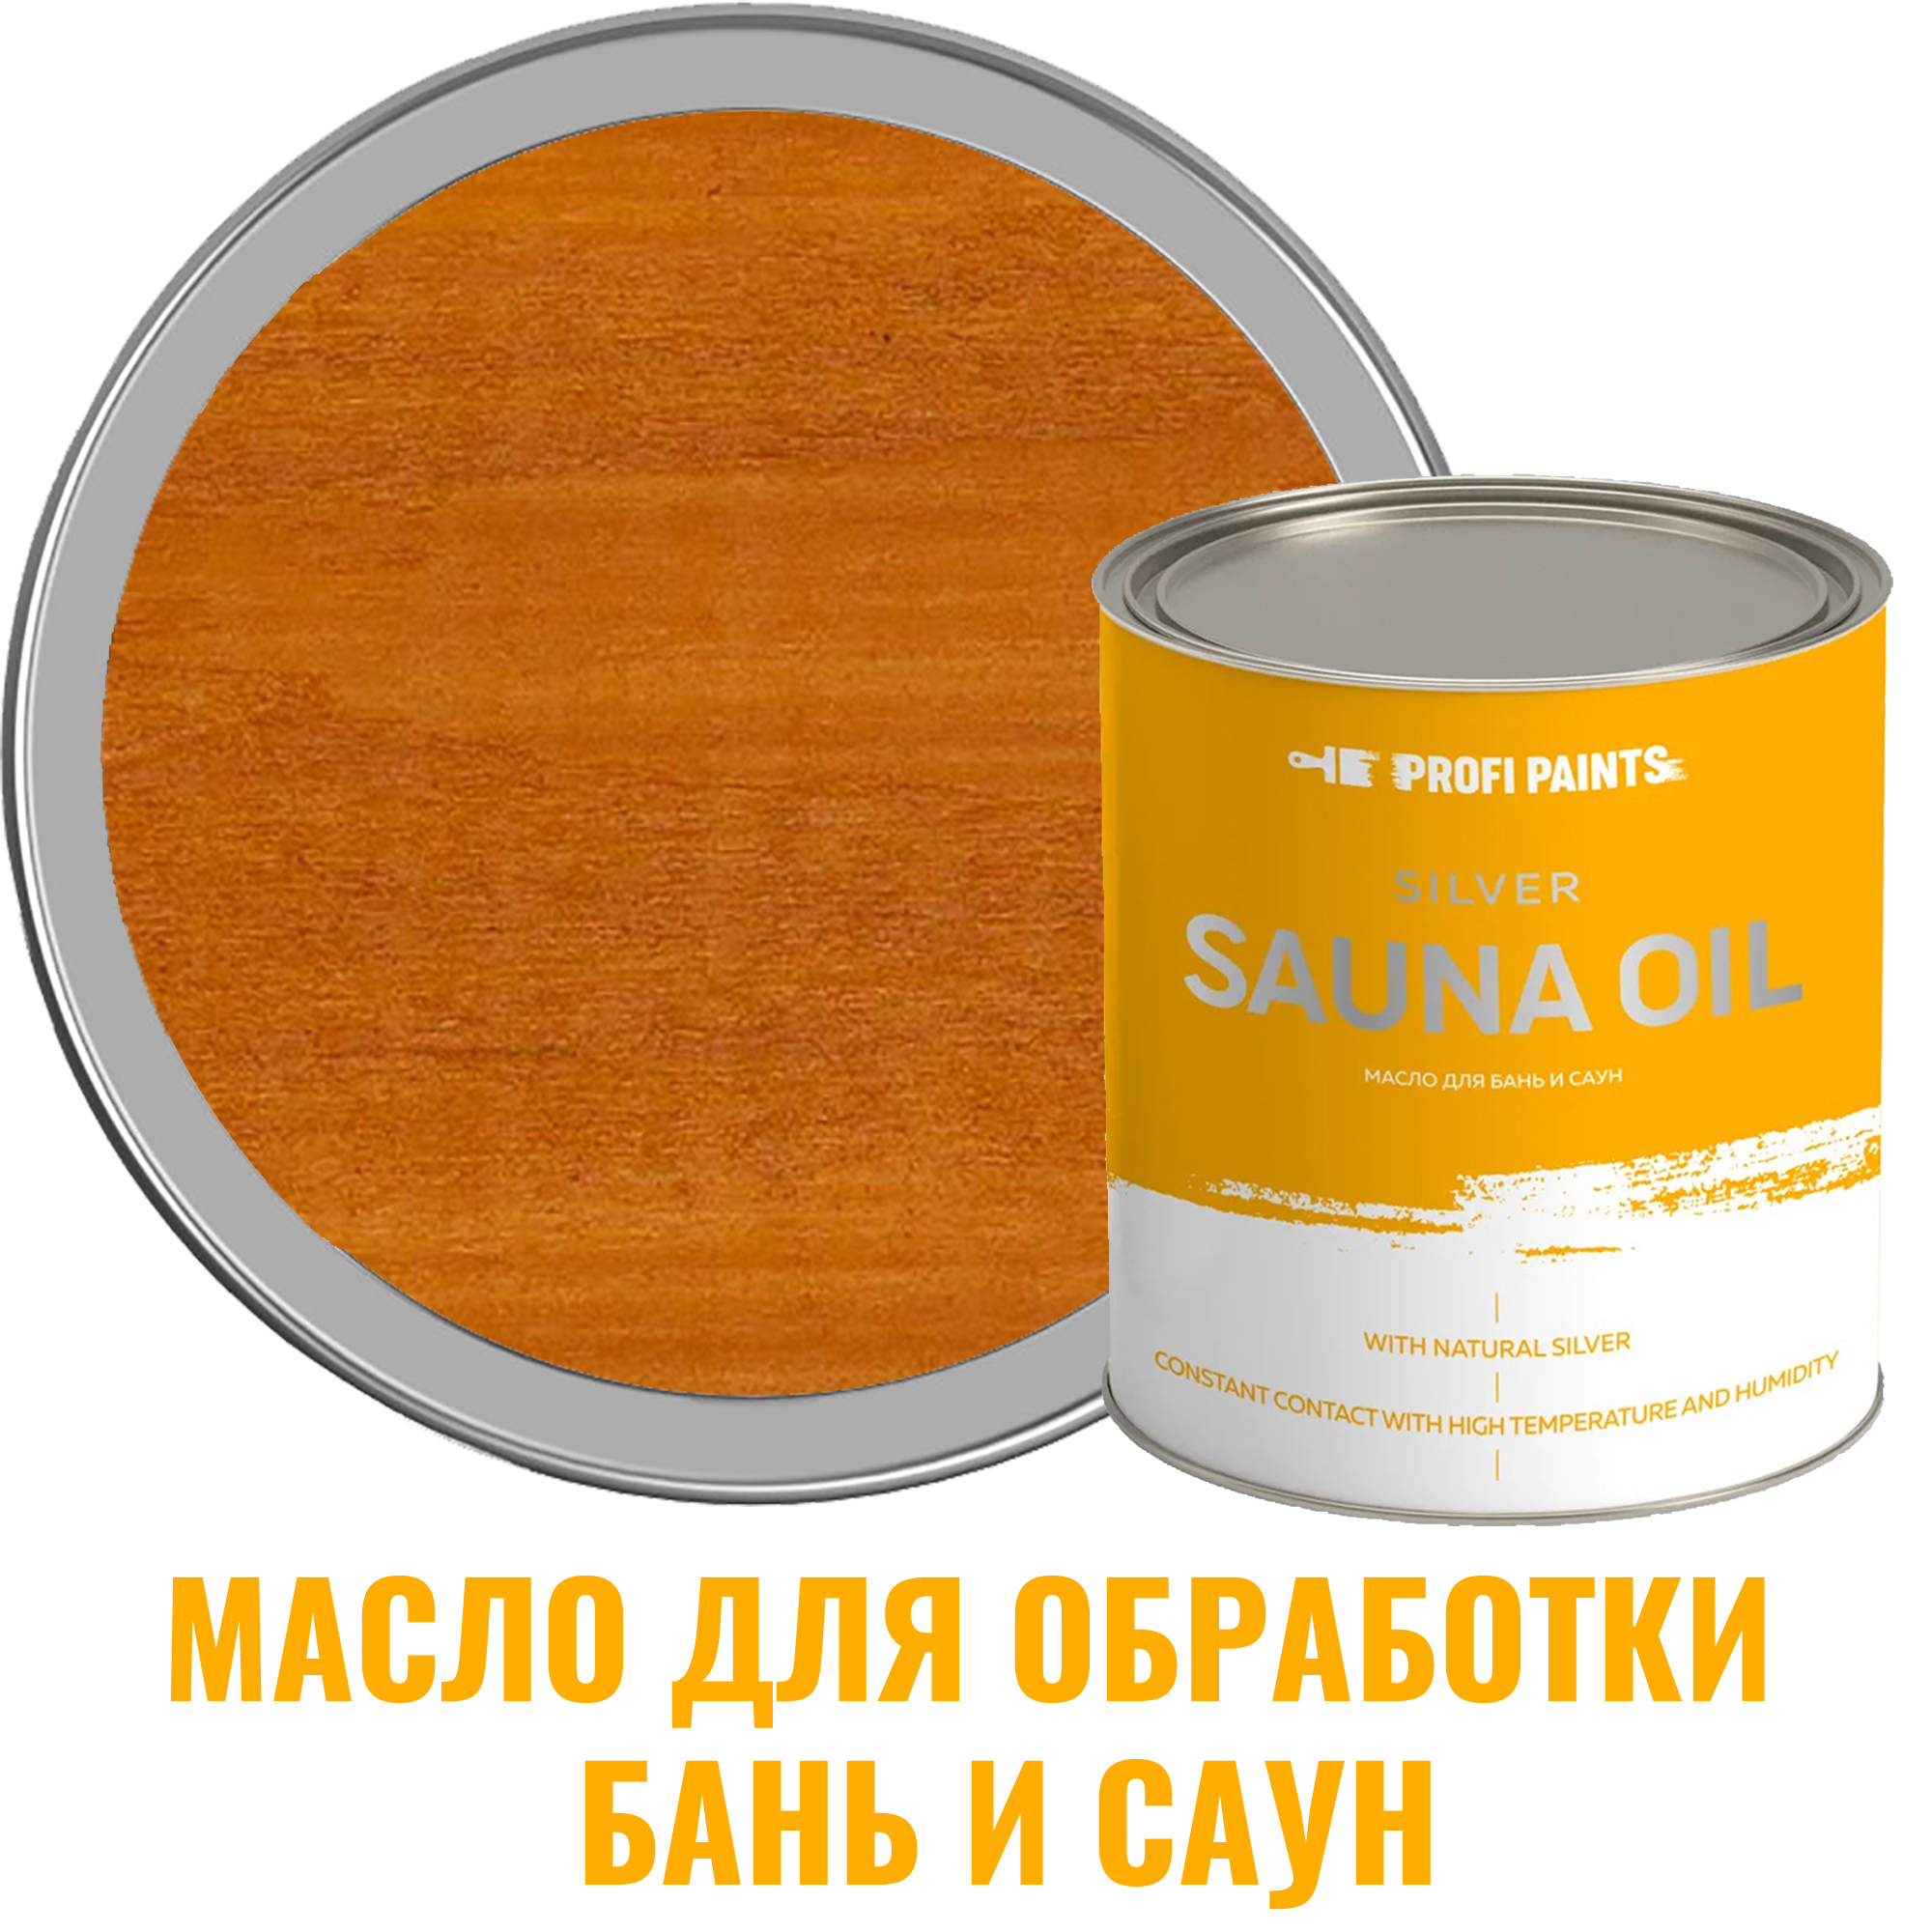 91095369 Масло для бань и саун 10808_D Silver Sauna Oil цвет золотой дуб 2.7 л STLM-0481730 PROFIPAINTS